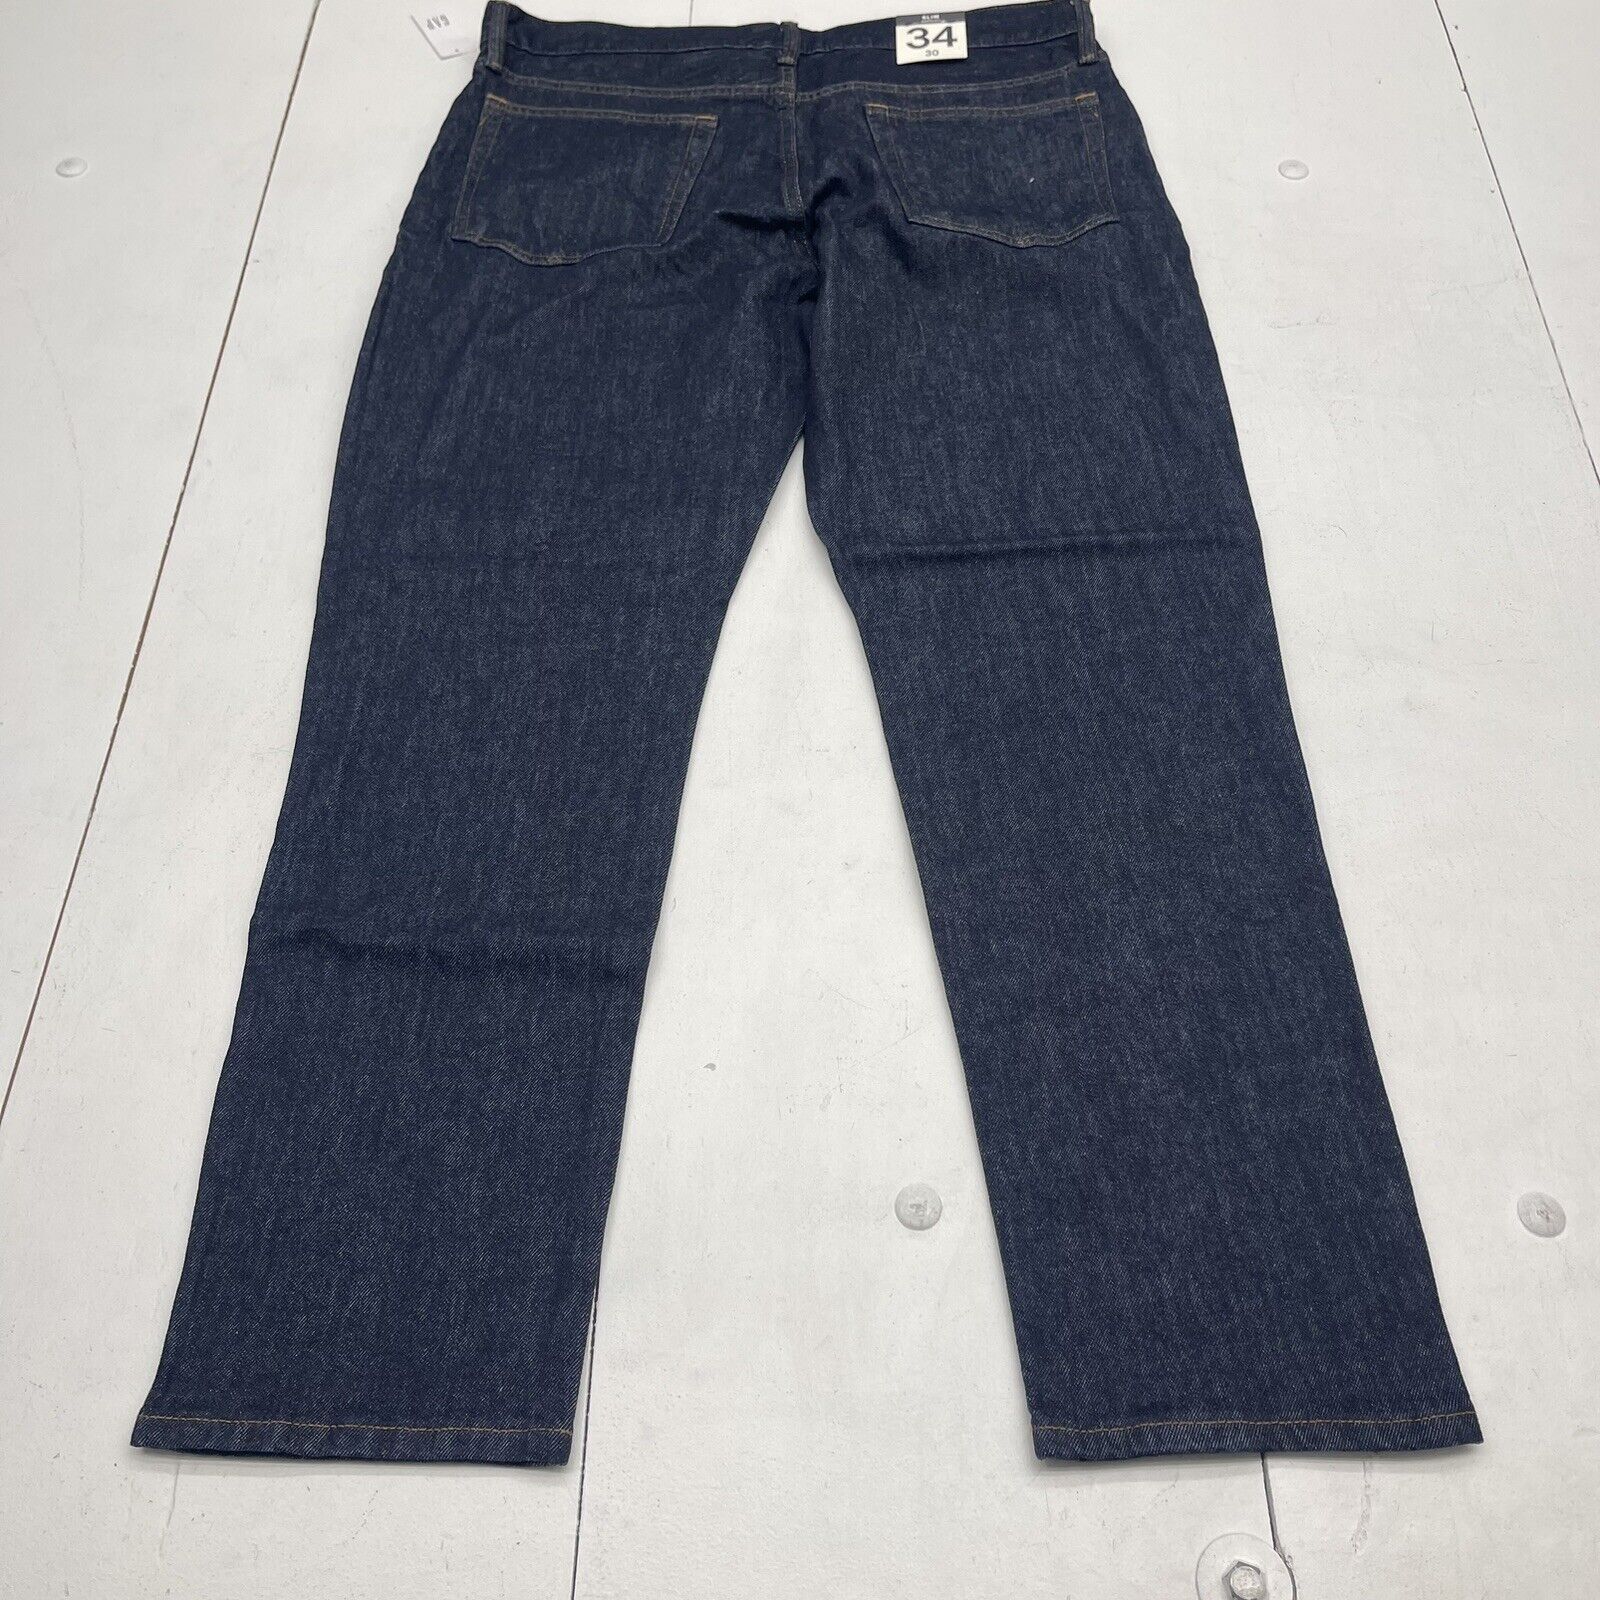 Gap Flex Slim Leg Dark Wash Jeans Mens Size 34x30 New - beyond exchange